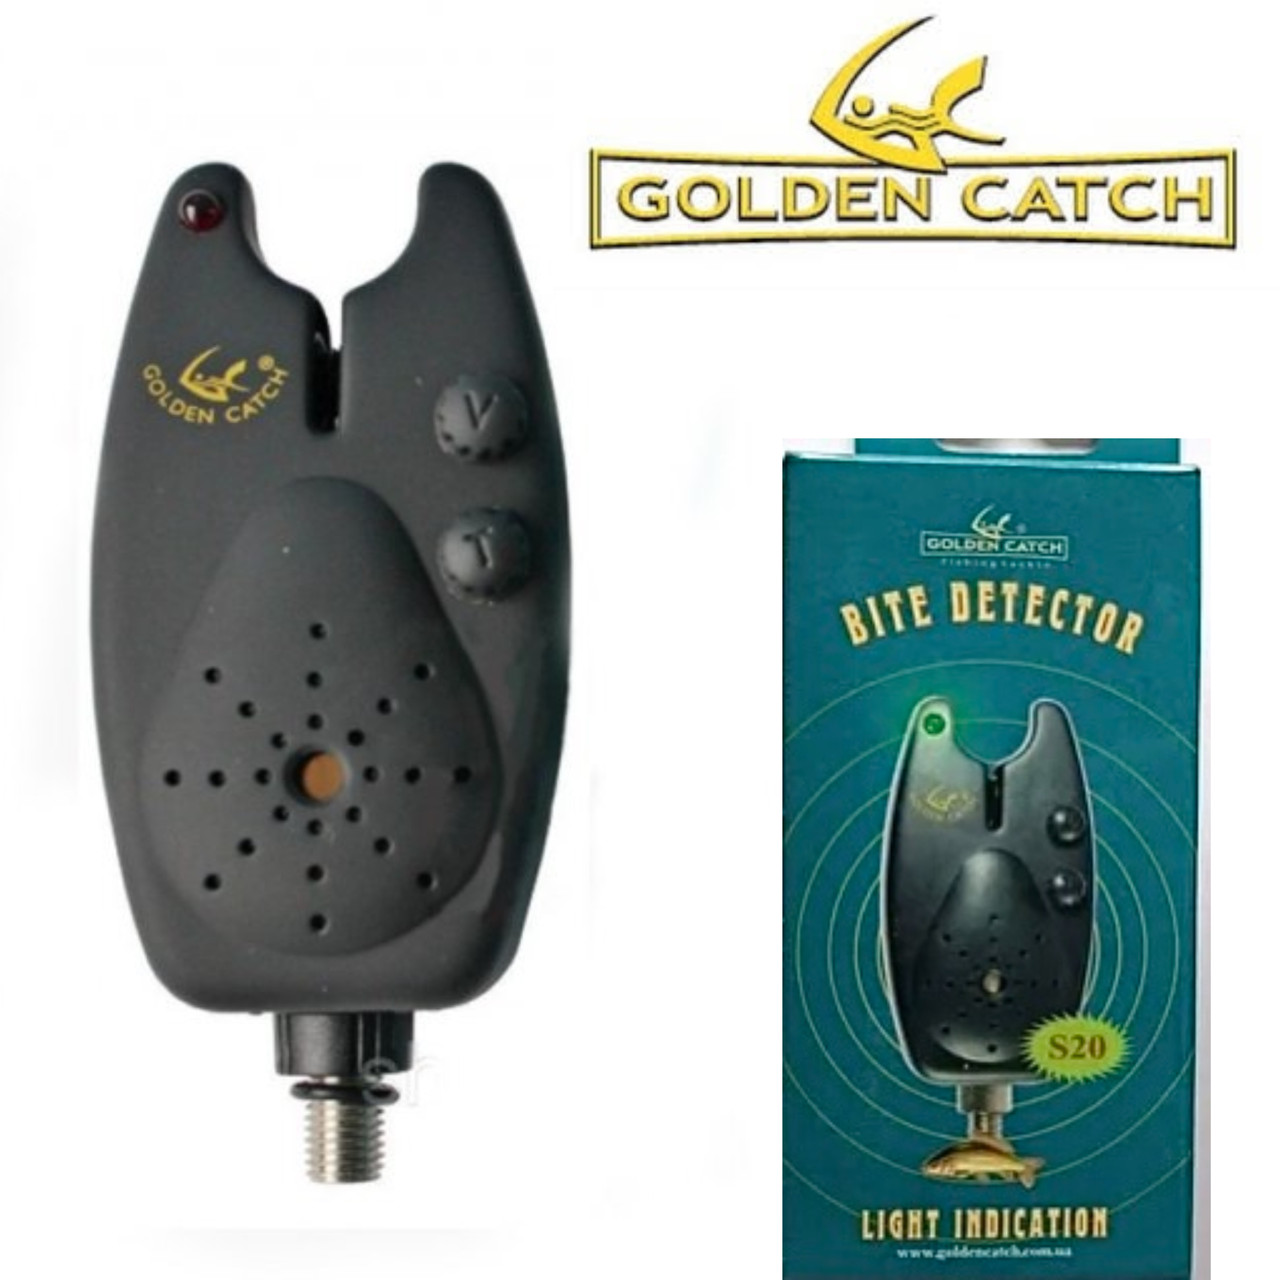 

Сигнализатор электронный Golden Catch S-20